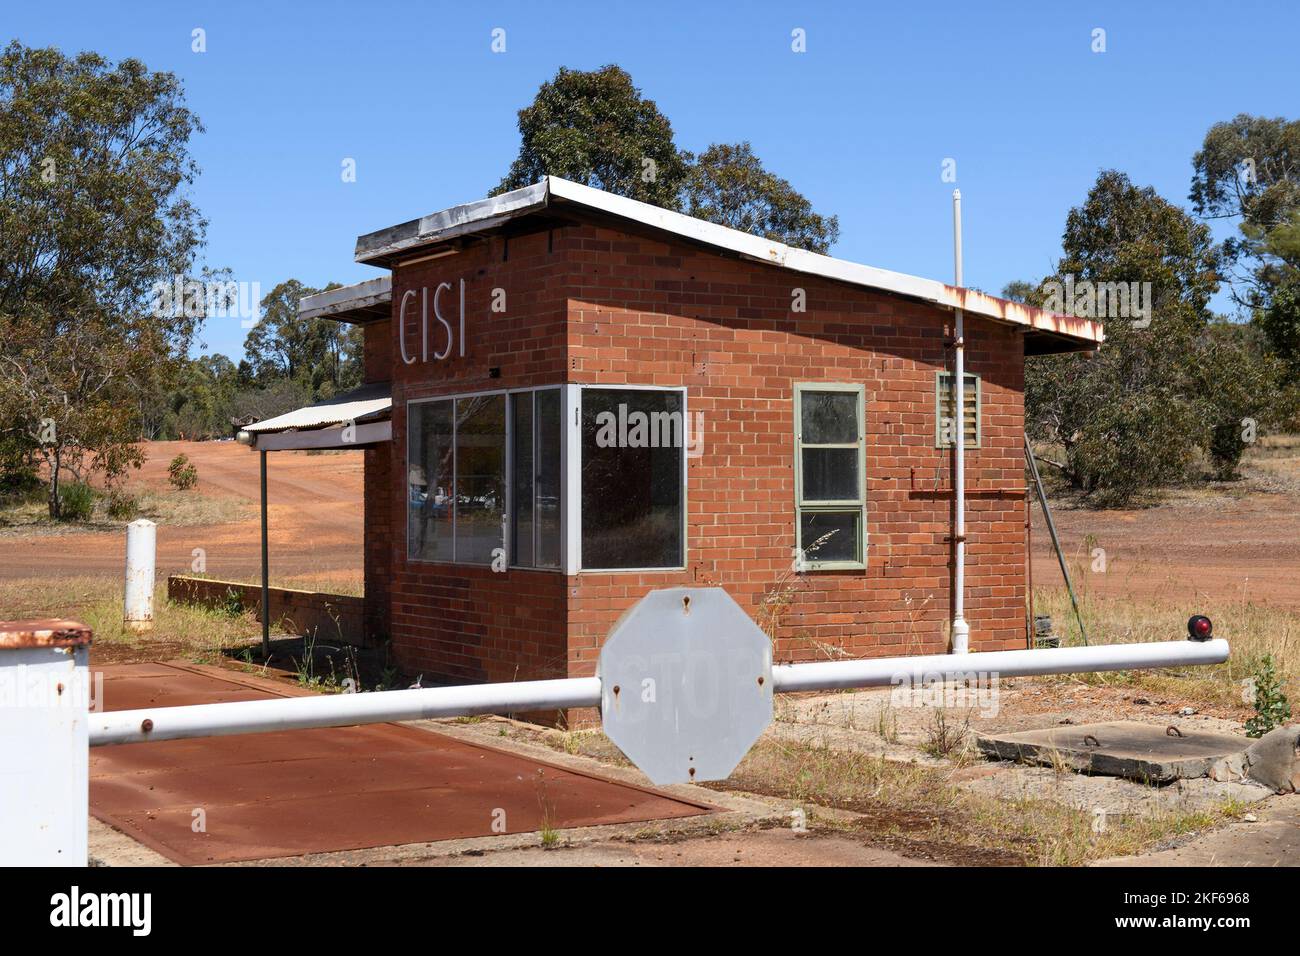 Porte-rampe, pont-bascule et bâtiment de sortie de l'ancienne Wundowie Charcoal Iron and Steel Industry (CISI). Wundowie, Australie occidentale Banque D'Images